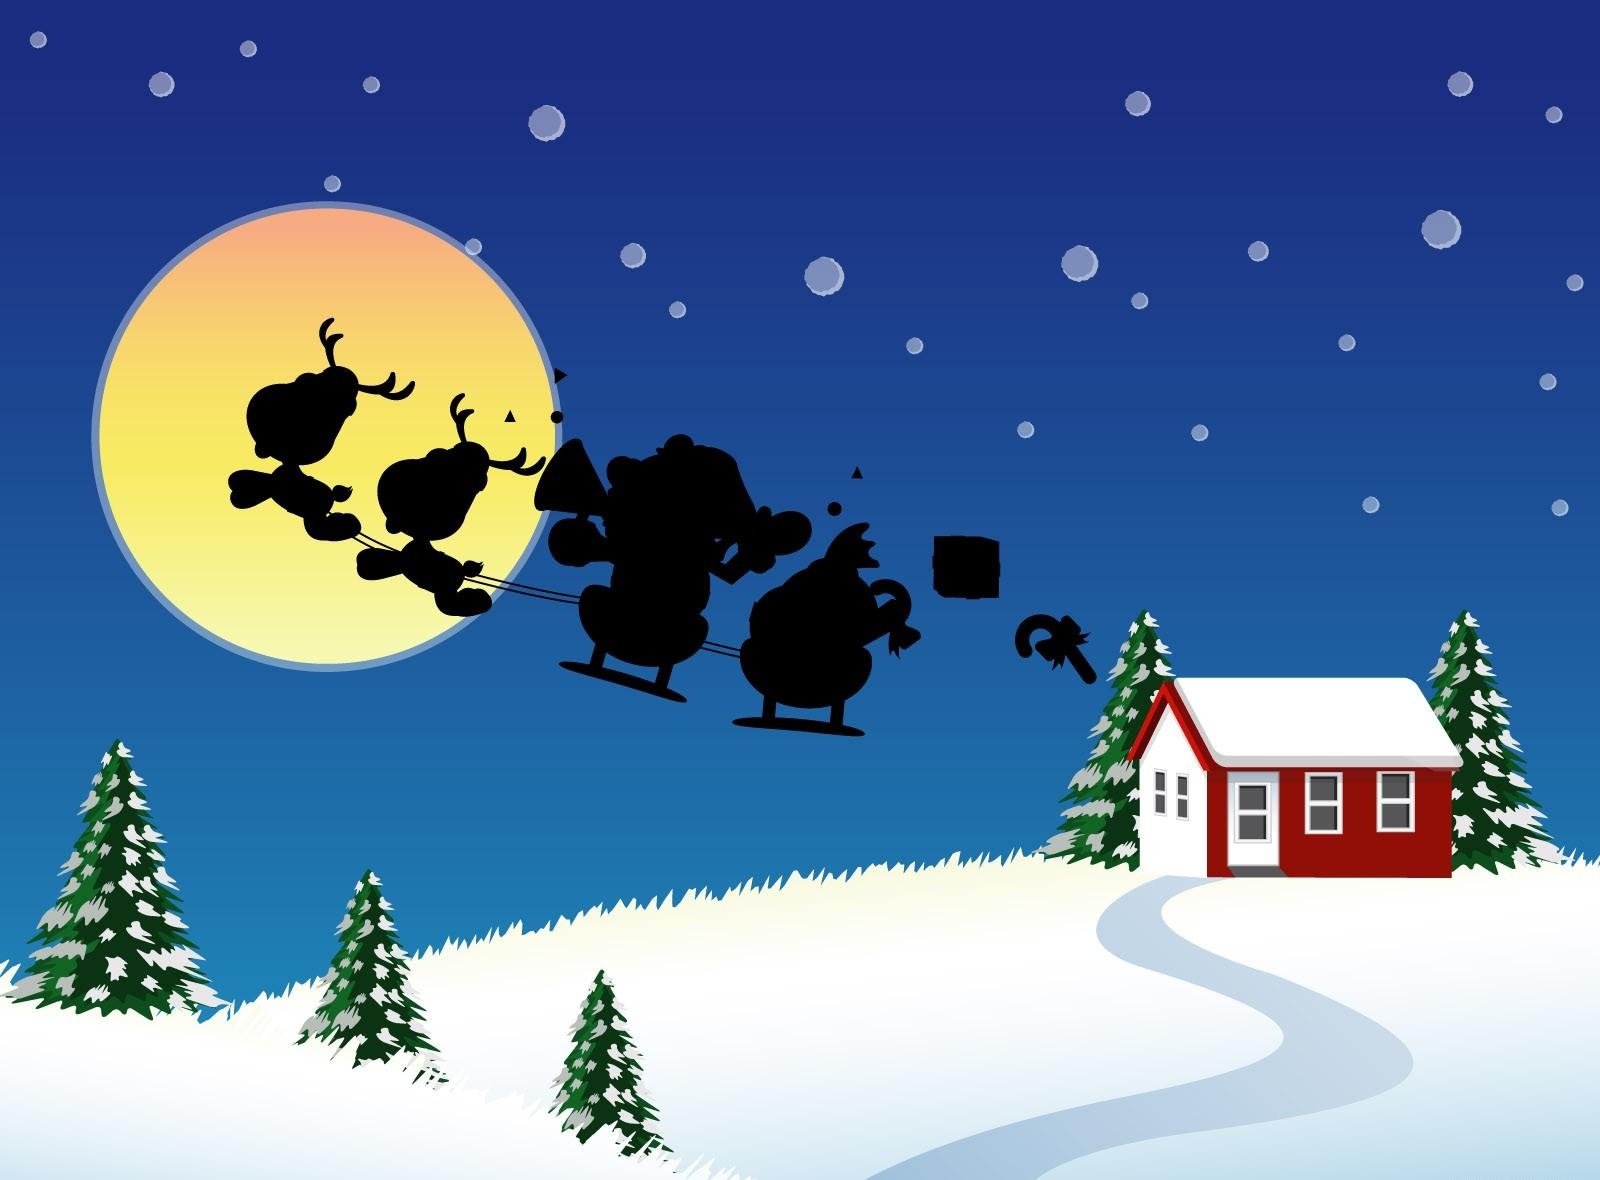 santa claus, holidays, moon, fir trees, christmas, house, flight, sleigh, sledge